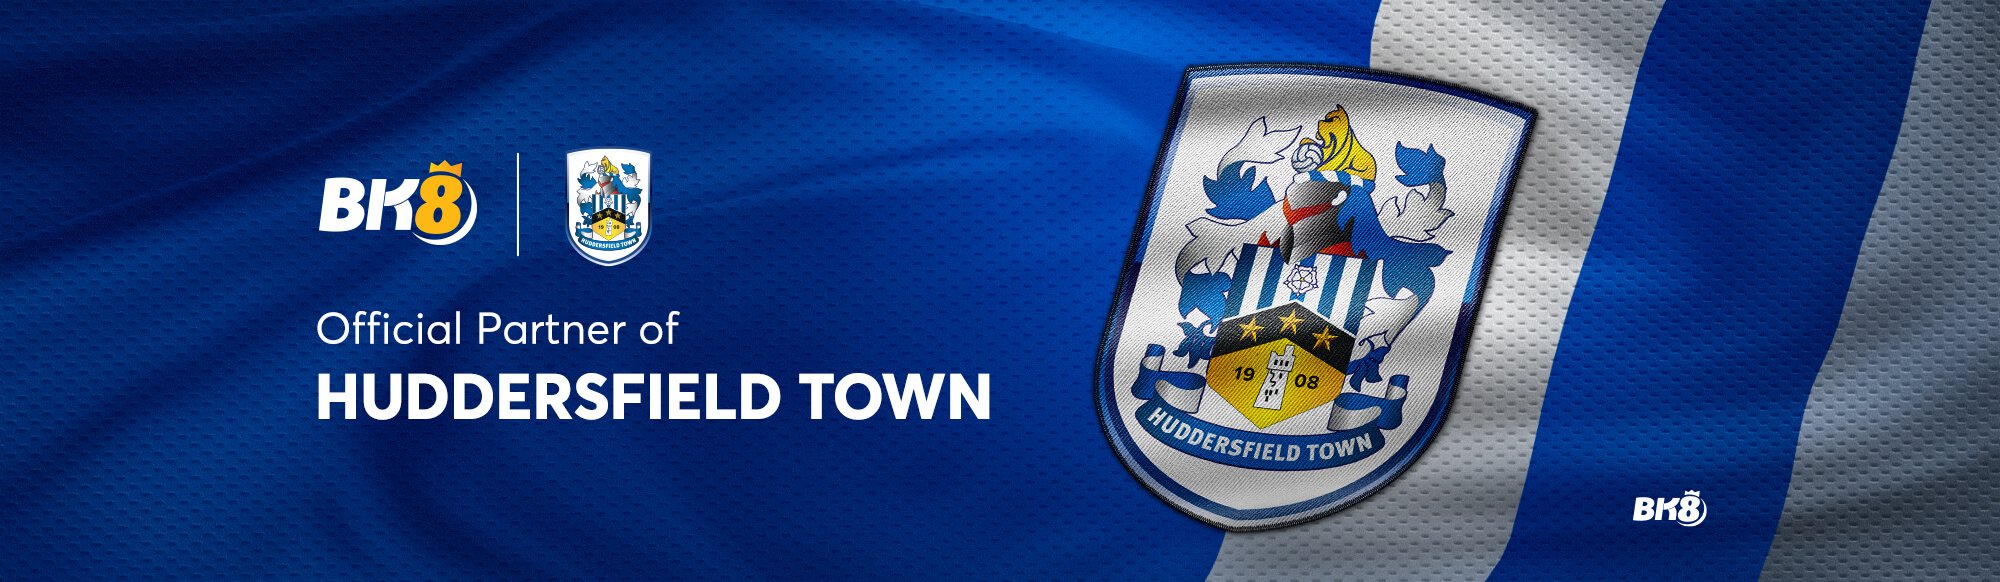 BK8-Official-Partner-of-Huddersfield-Town-F.C.